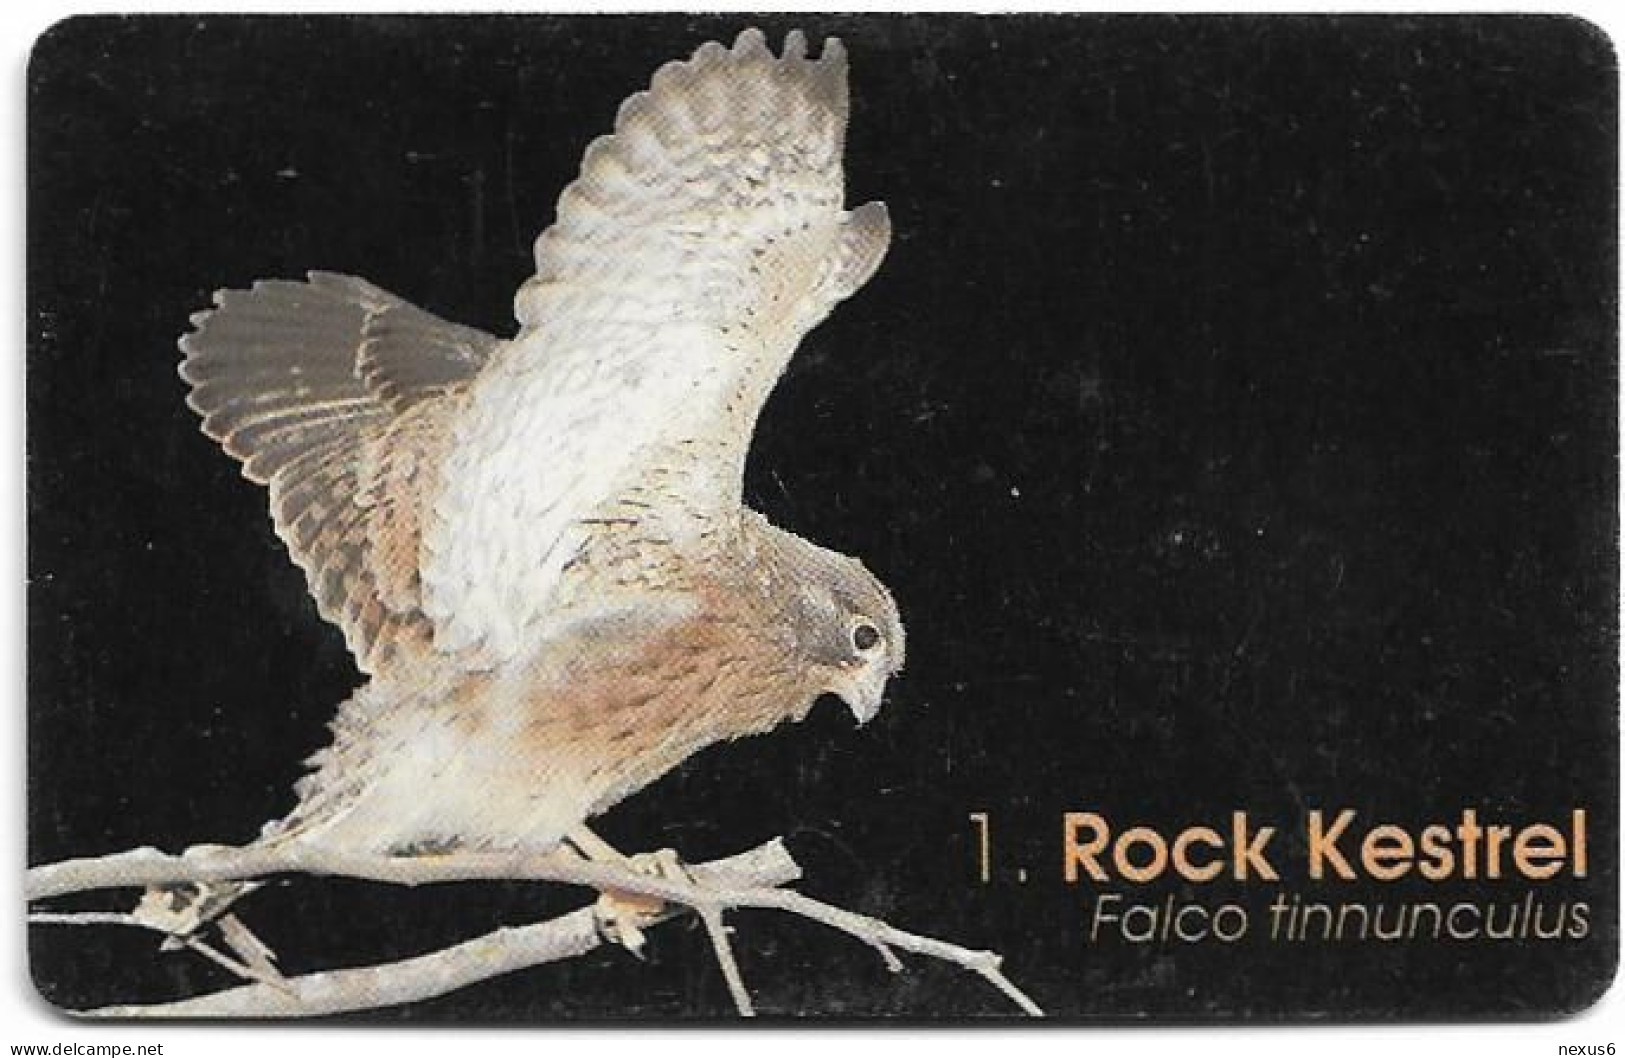 Namibia - Telecom Namibia - Birds Of Namibia, Rock Kestrel - 20$, 1999, Used - Namibië